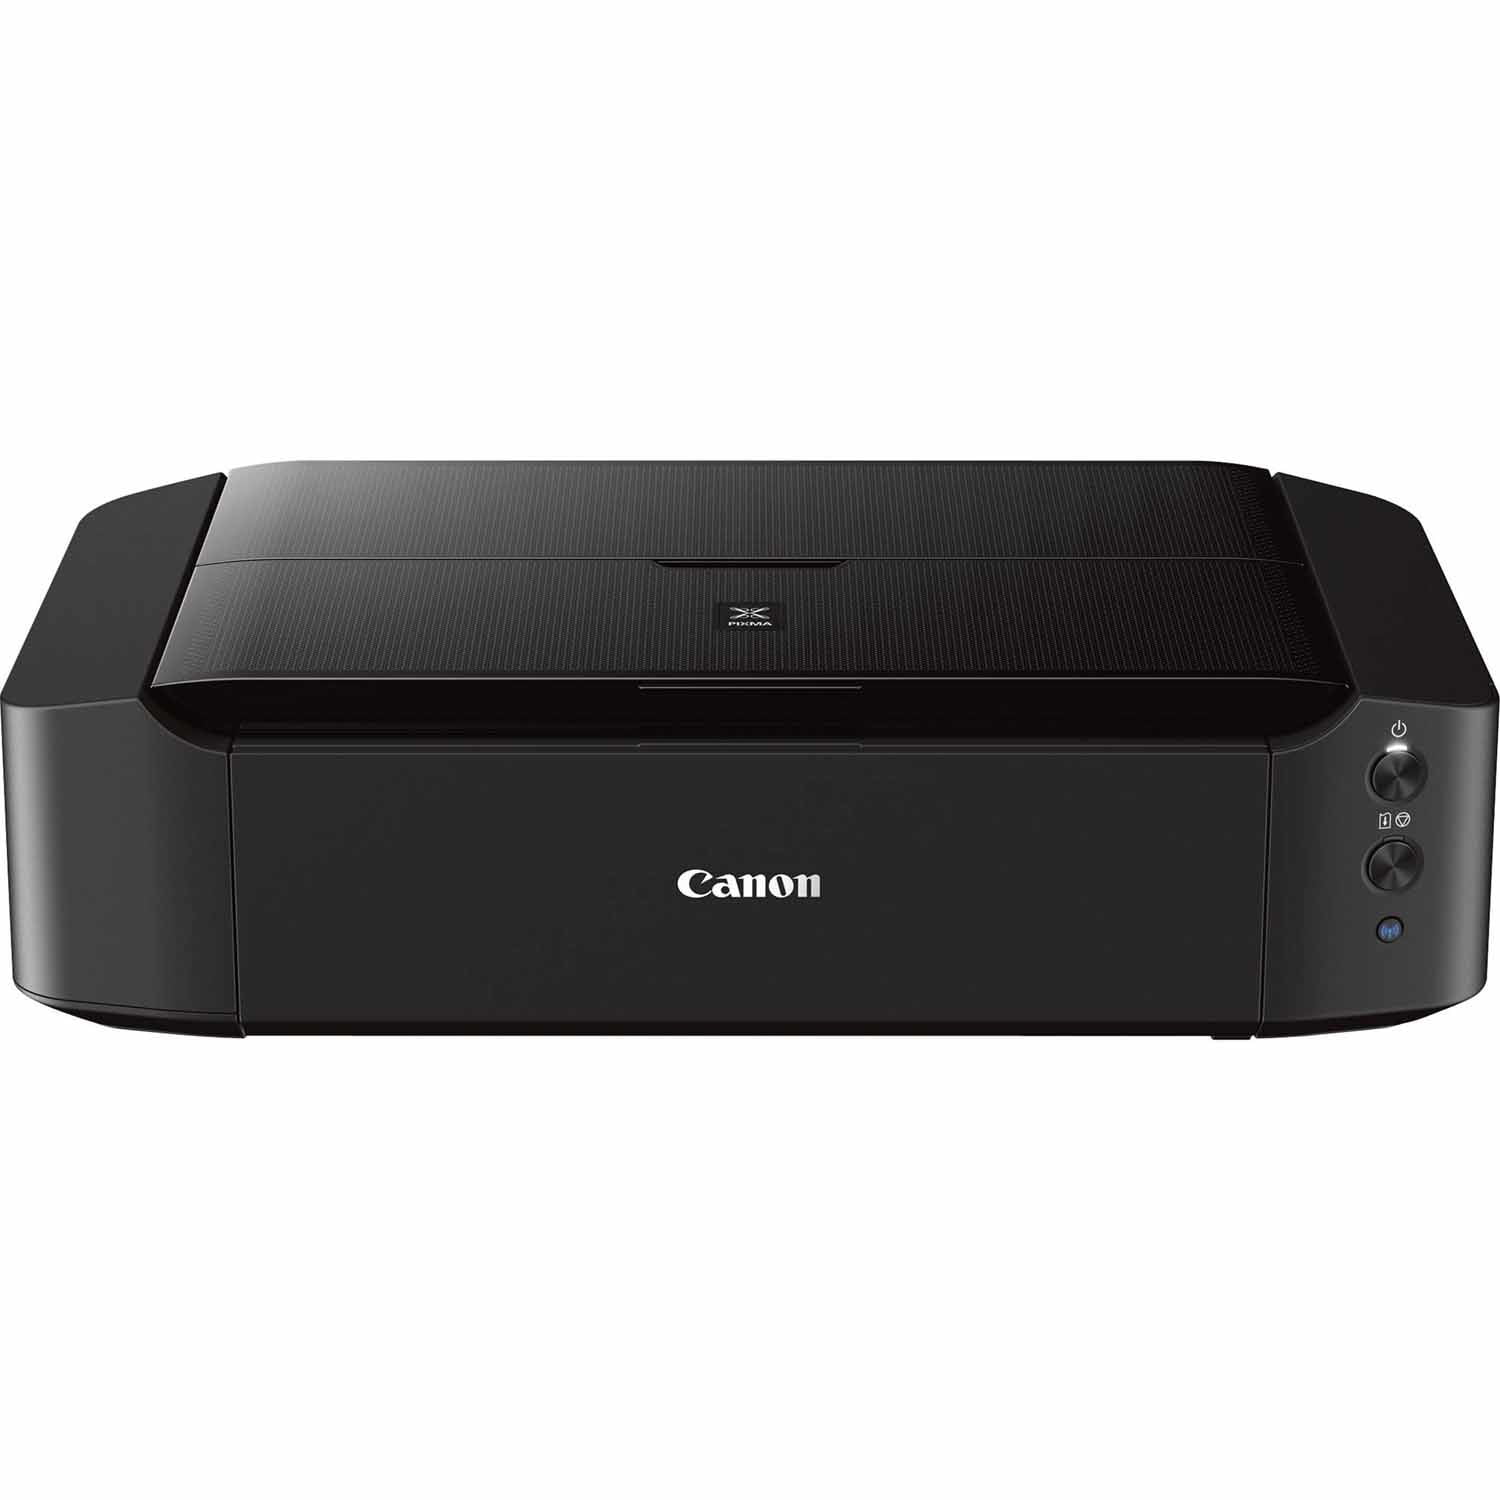 Canon iP8720 Inkjet Printer, Black -